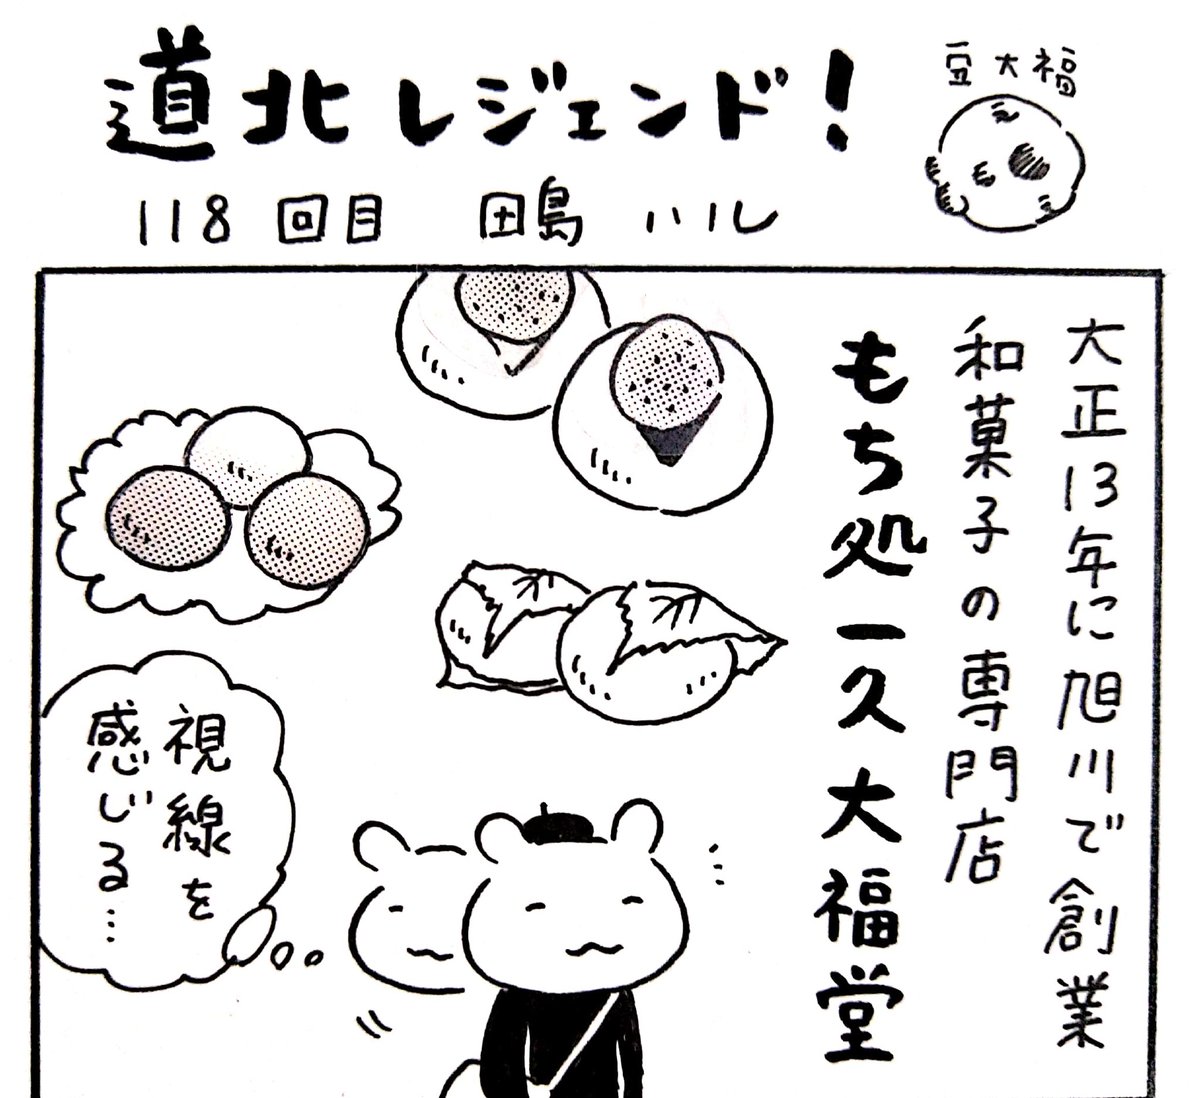 本日12日の北海道新聞夕刊旭川面に漫画 #道北レジェンド !118回目載ってます。大正13年に旭川に創業、和菓子の専門店「もち処 一久大福堂」。こちらの某お饅頭は可愛すぎて食べられない。んなこたぁない🕊️ 